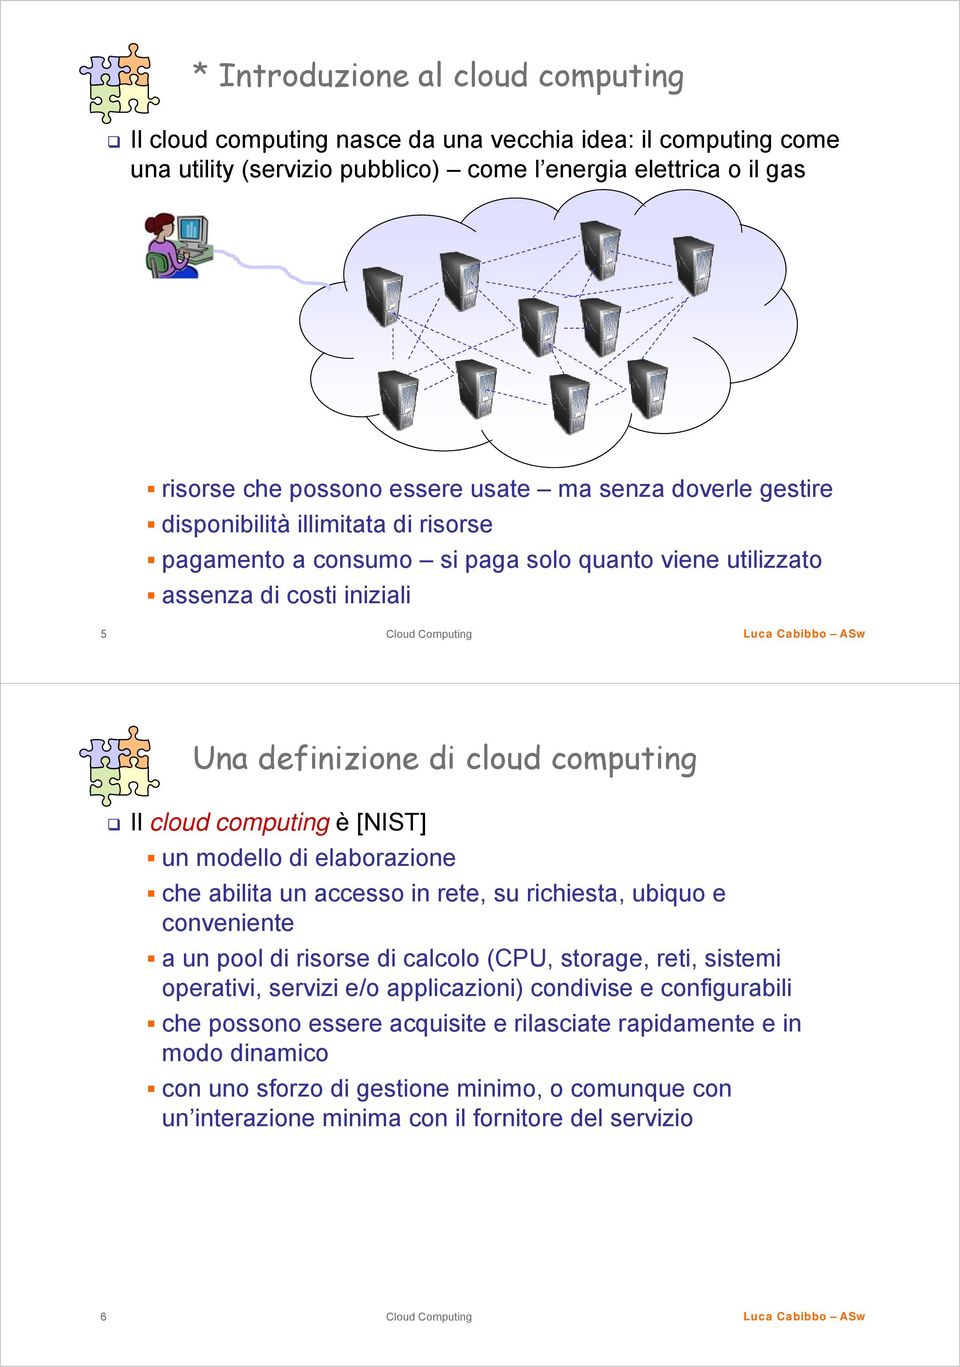 [NIST] un modello di elaborazione che abilita un accesso in rete, su richiesta, ubiquo e conveniente a un pool di risorse di calcolo (CPU, storage, reti, sistemi operativi, servizi e/o applicazioni)